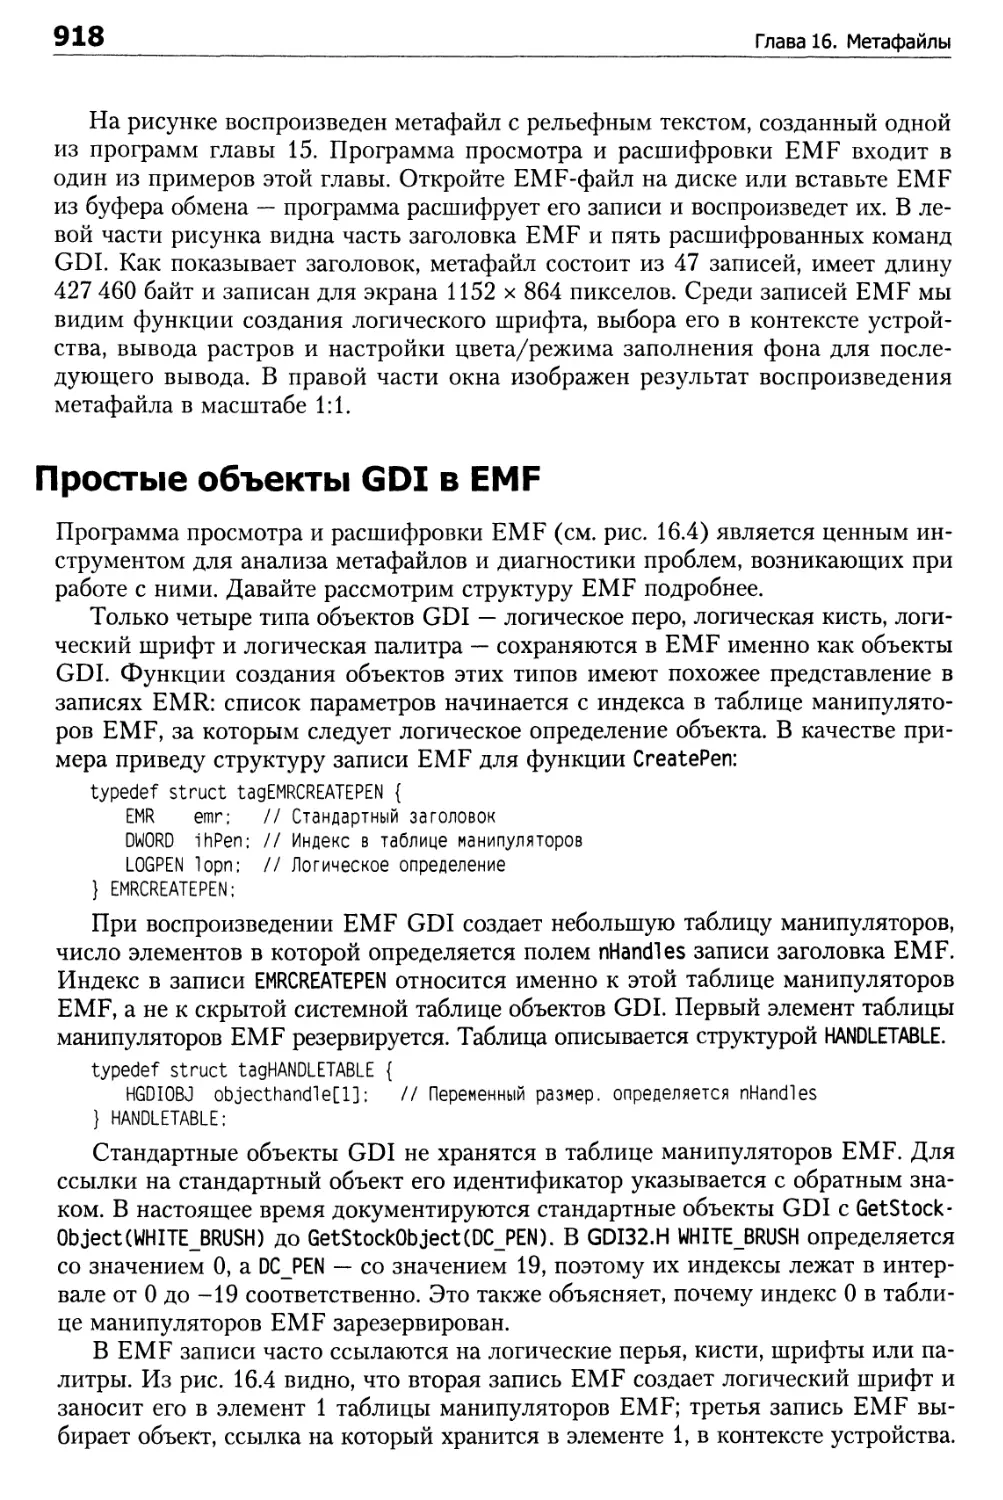 Простые объекты GDI в EMF